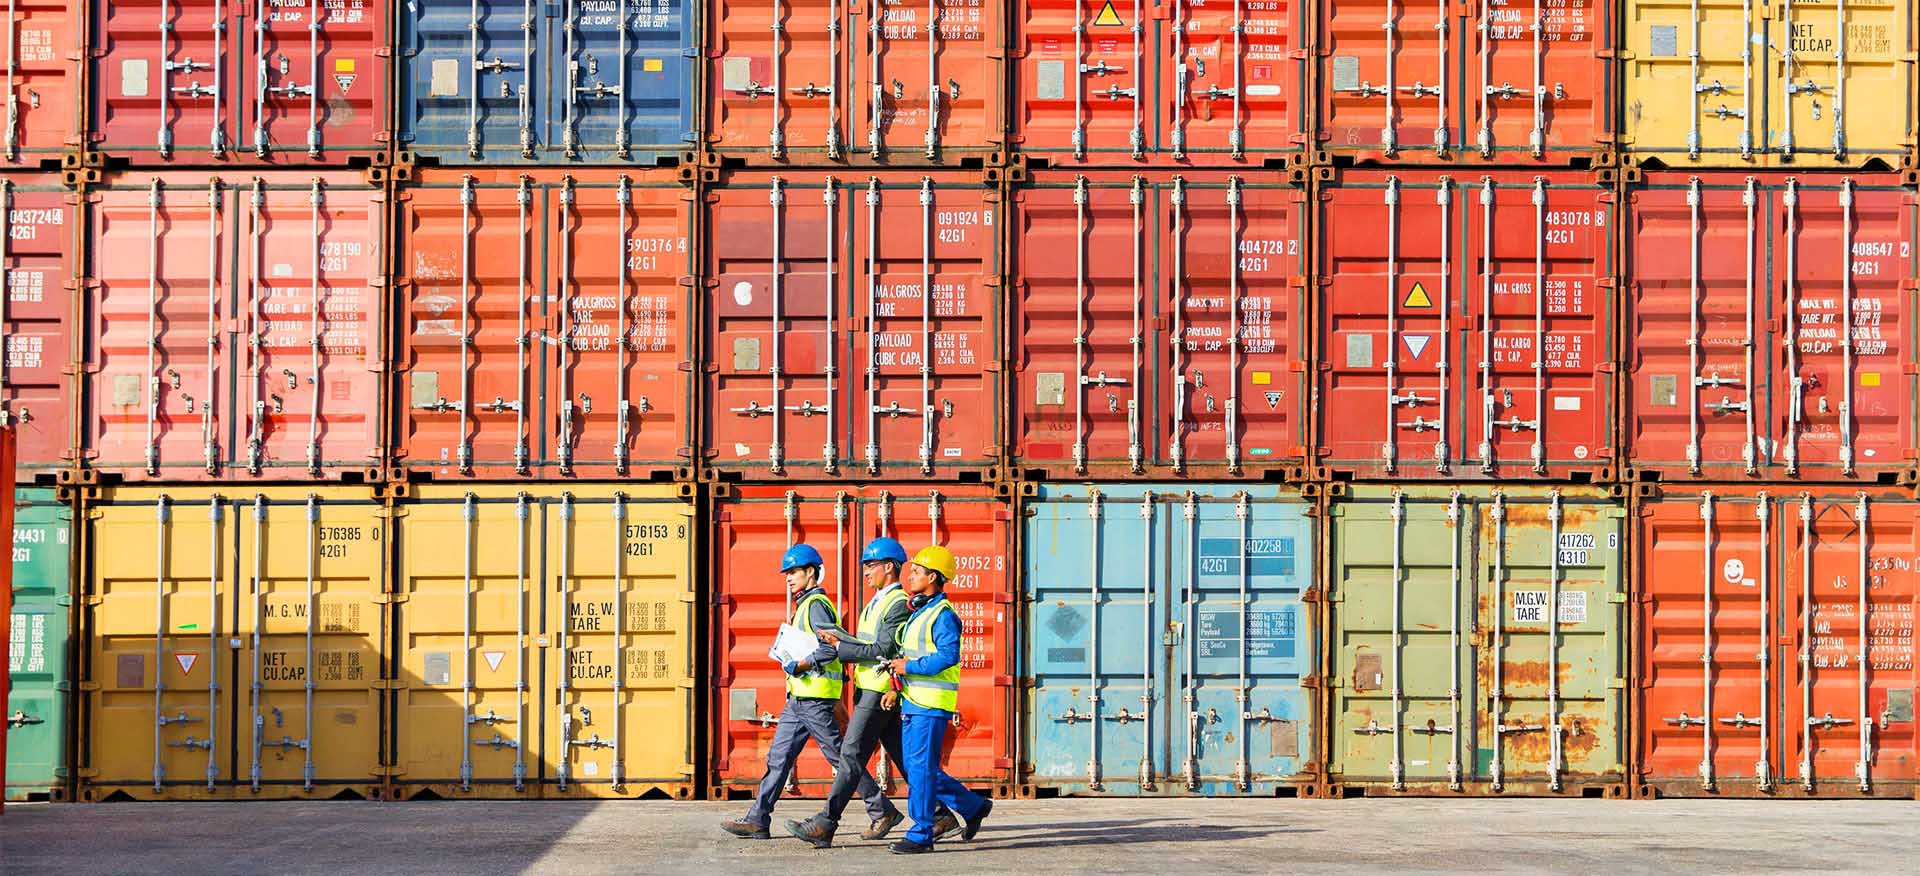 Las exportaciones en contenedores en ALC. Containerized exports in LAC. Exportations conteneurisées en ALC.